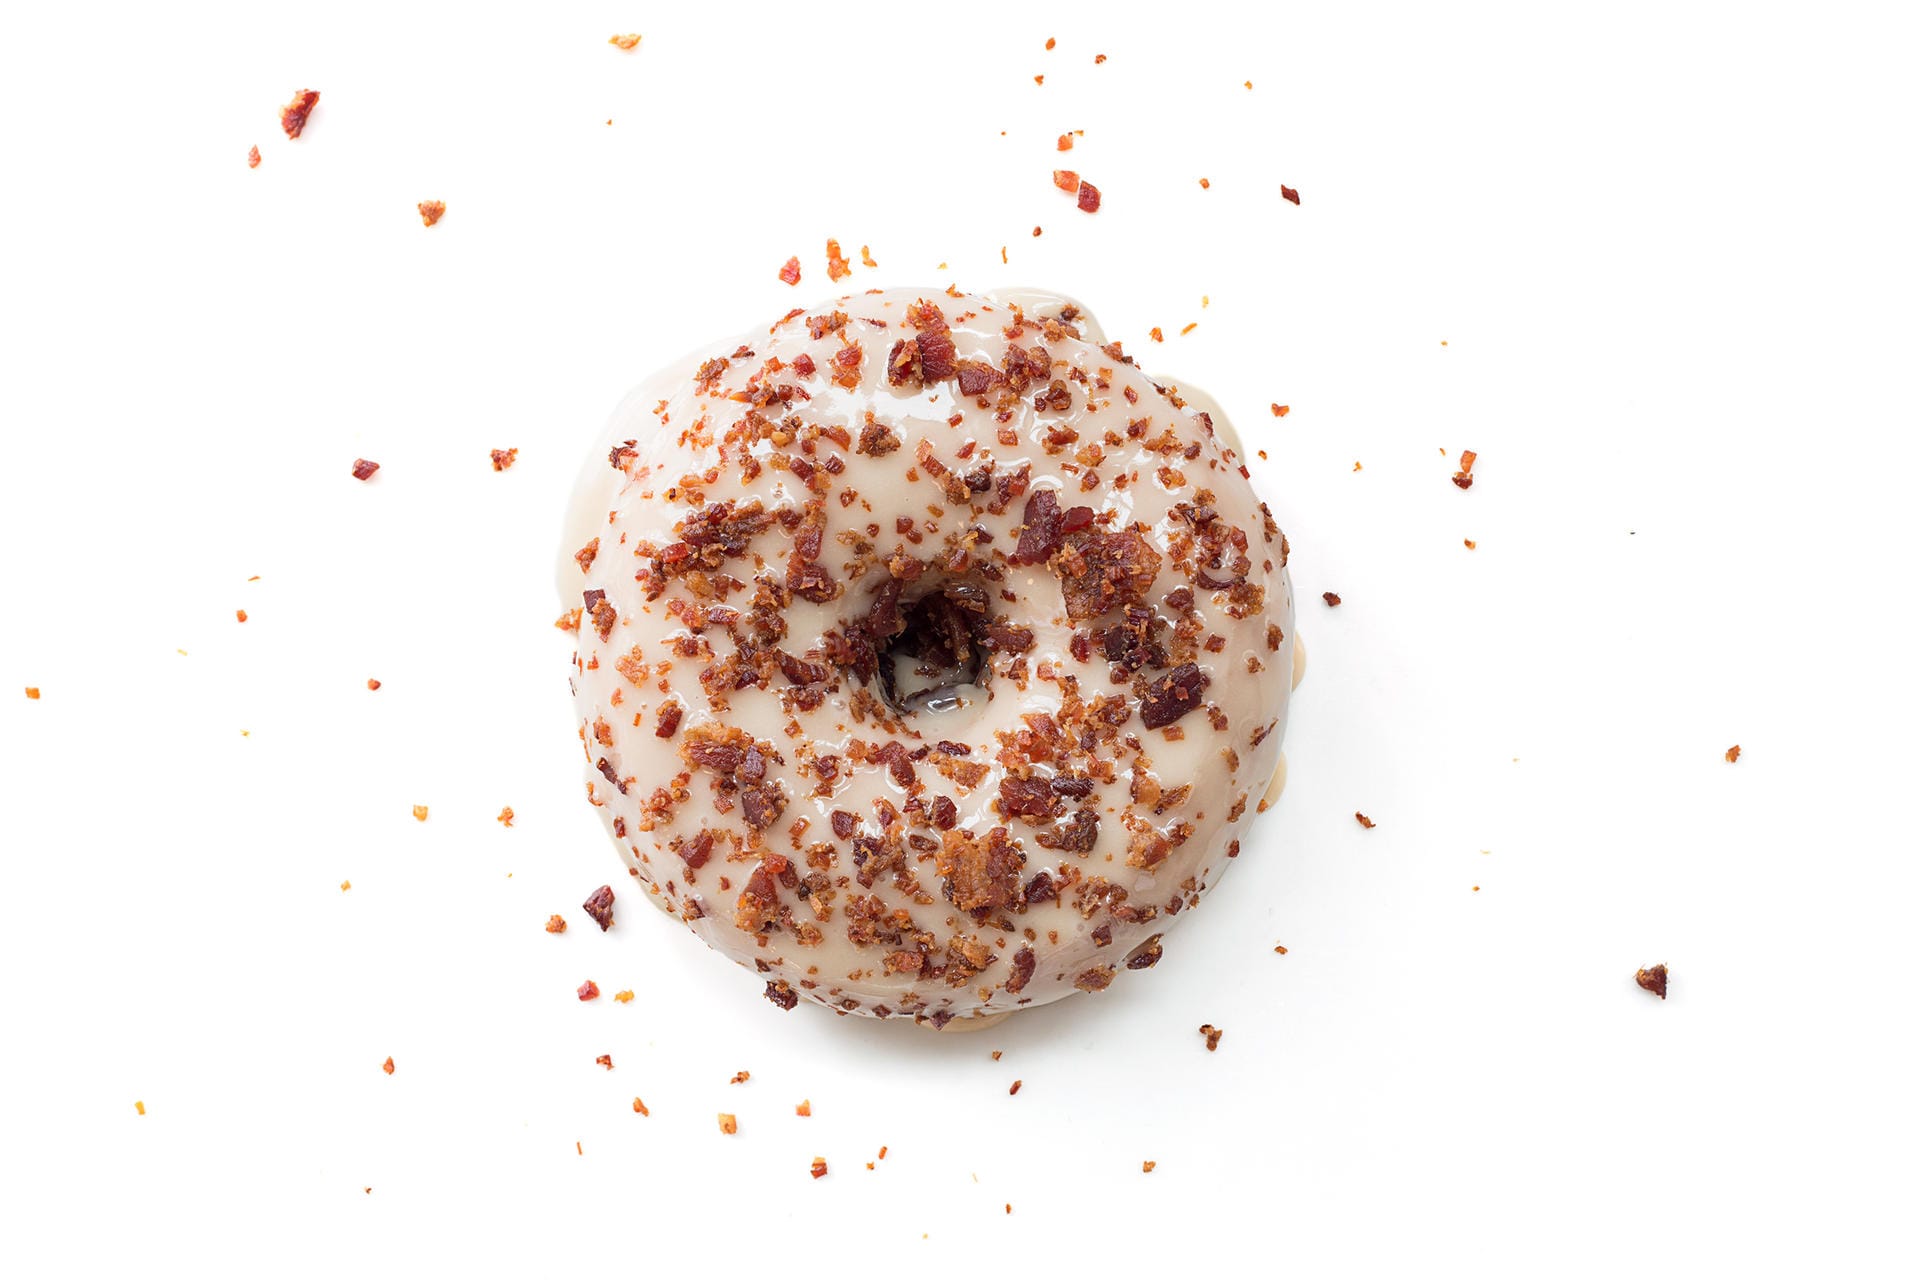 Die amerikanischen Donut-Spezialisten "Bluestar Donuts" haben knusprigen Bacon als Topping für eine ihrer Kreationen ausgewählt. Und die Kunden lieben es!